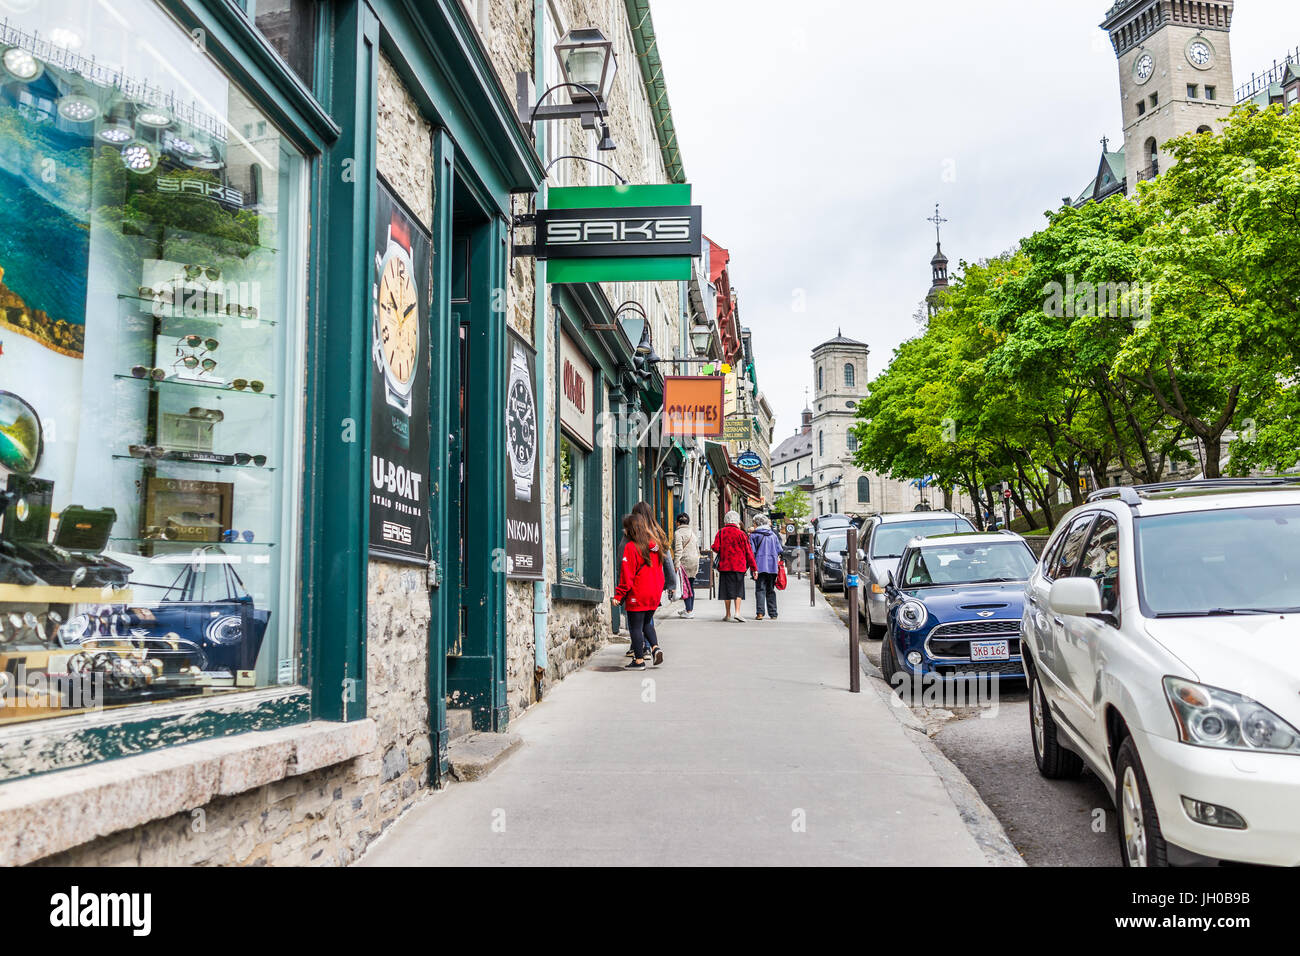 La ville de Québec, Canada - 29 mai 2017 : rue de la vieille ville avec ses boutiques et magasins avec mur de pierre bâtiments Banque D'Images